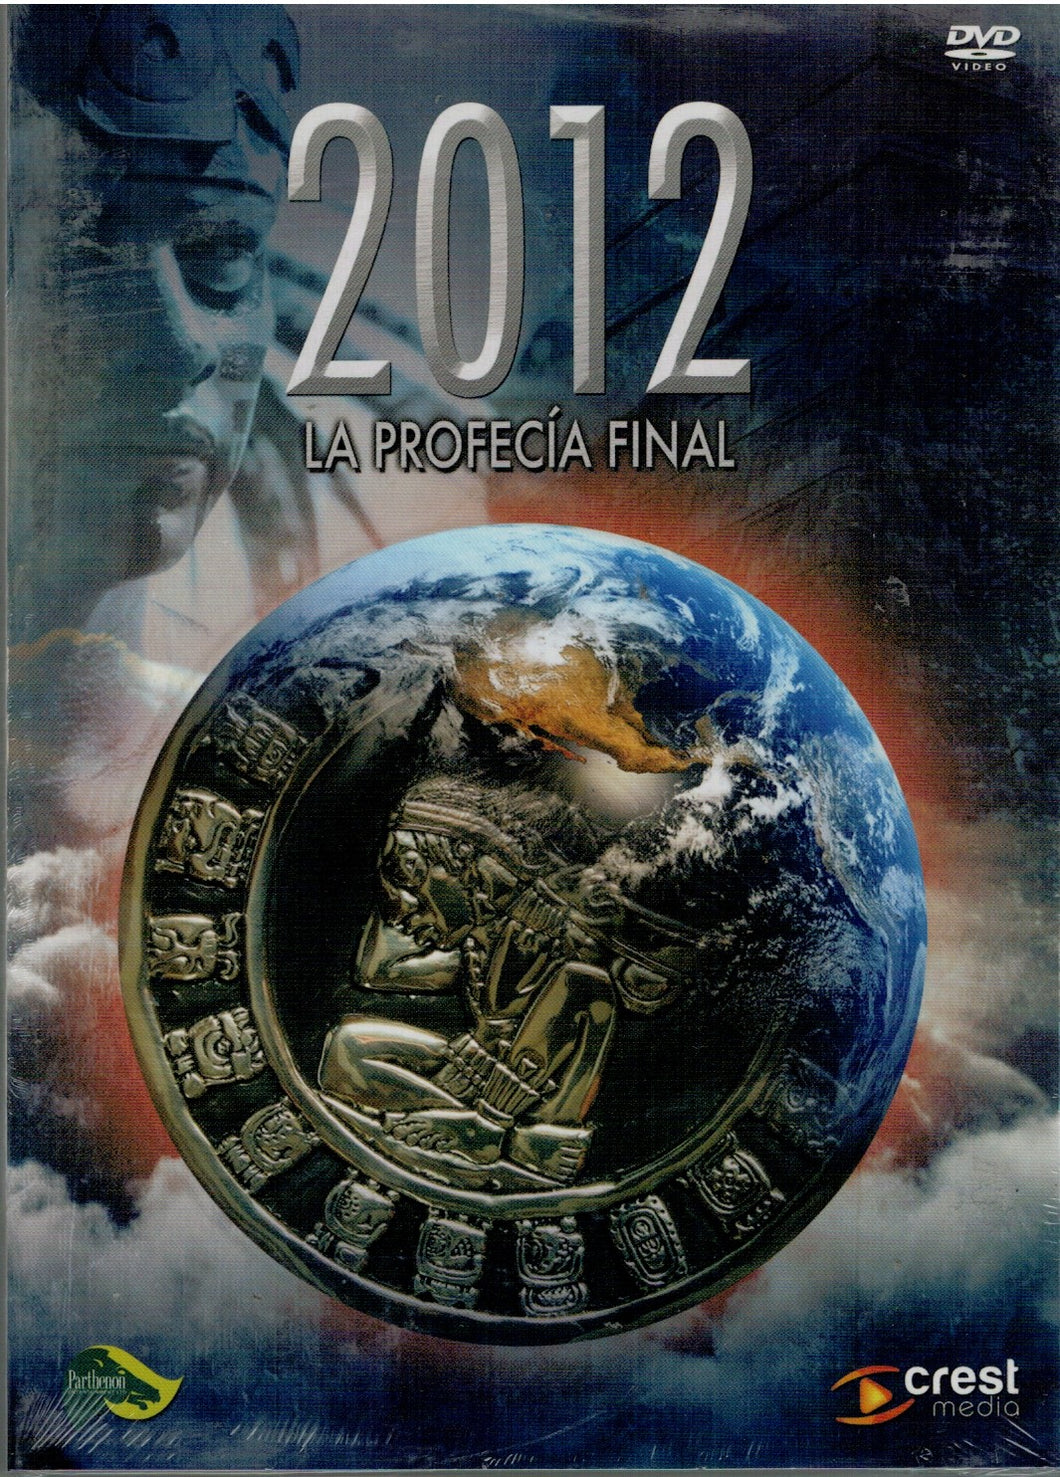 2012 La profecia final (DVD Nuevo)